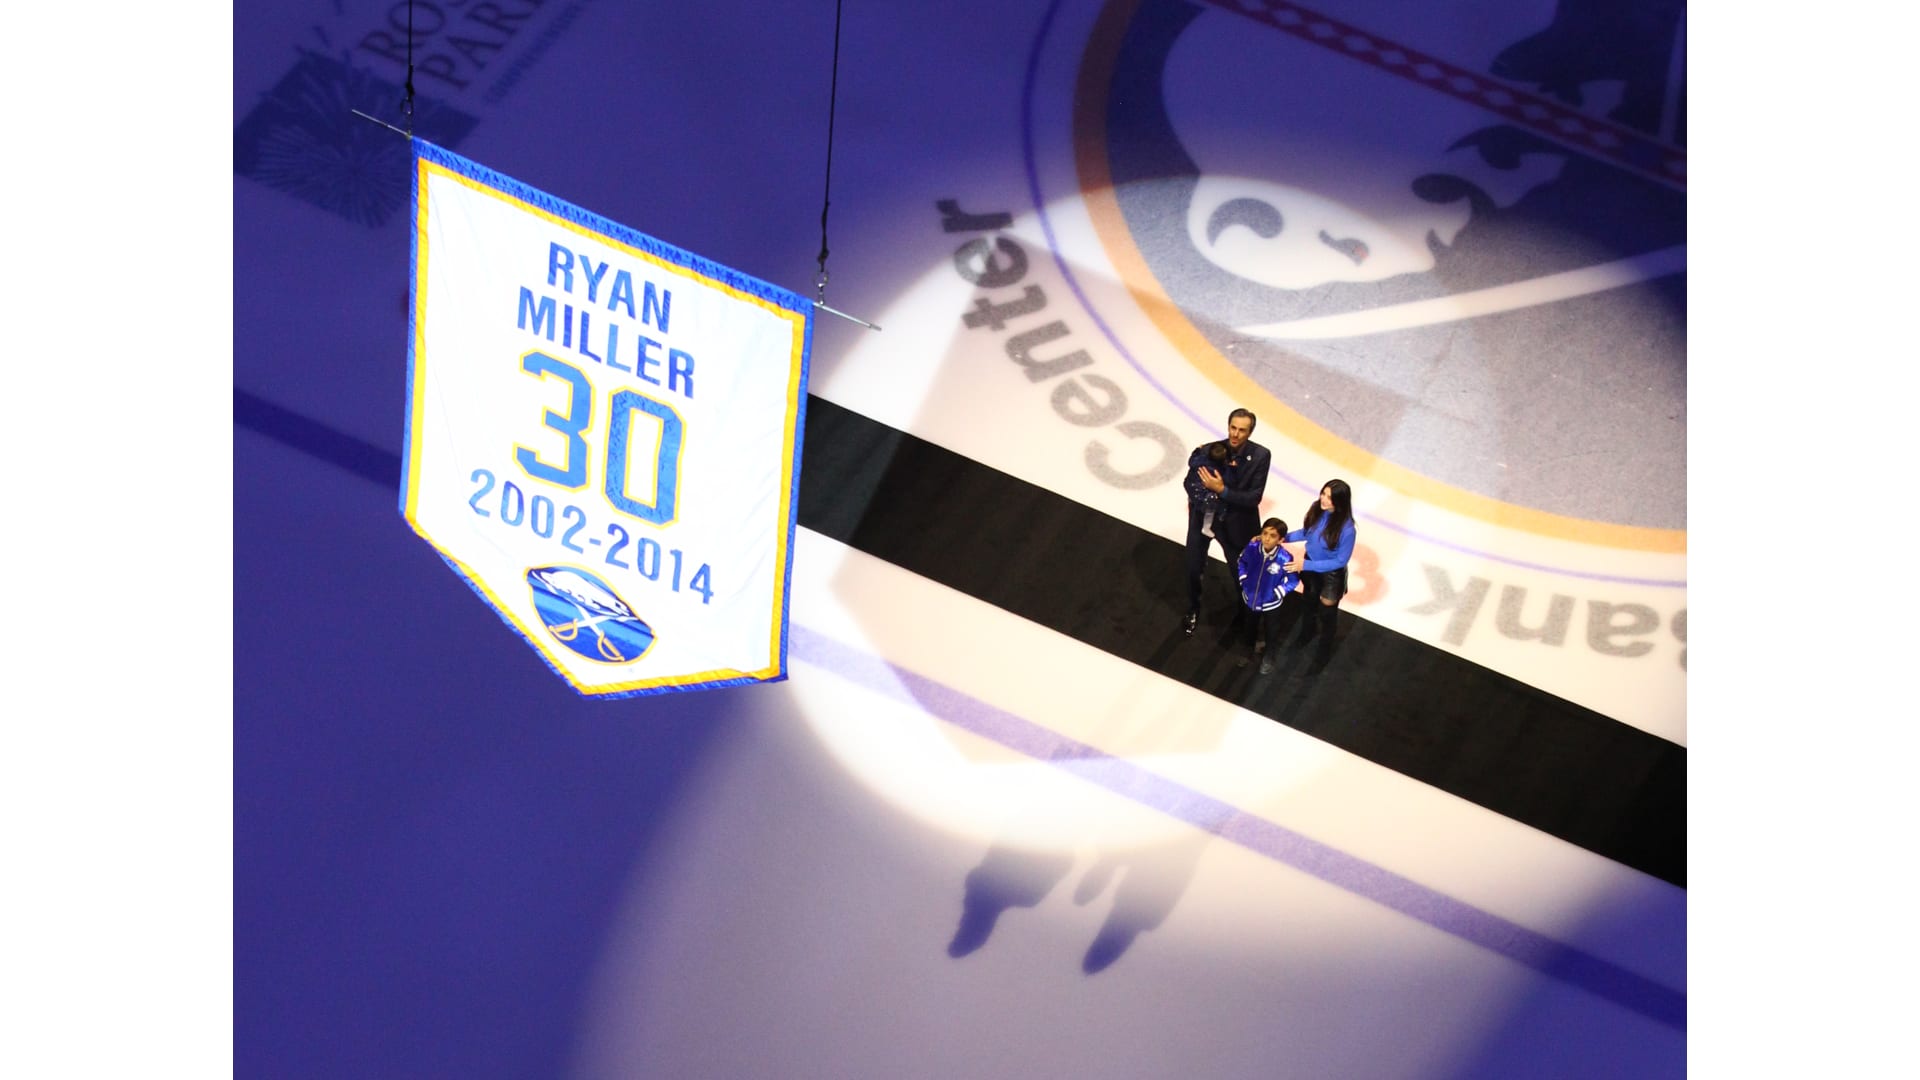 Buffalo Sabres to retire goalie Ryan Miller's No. 30